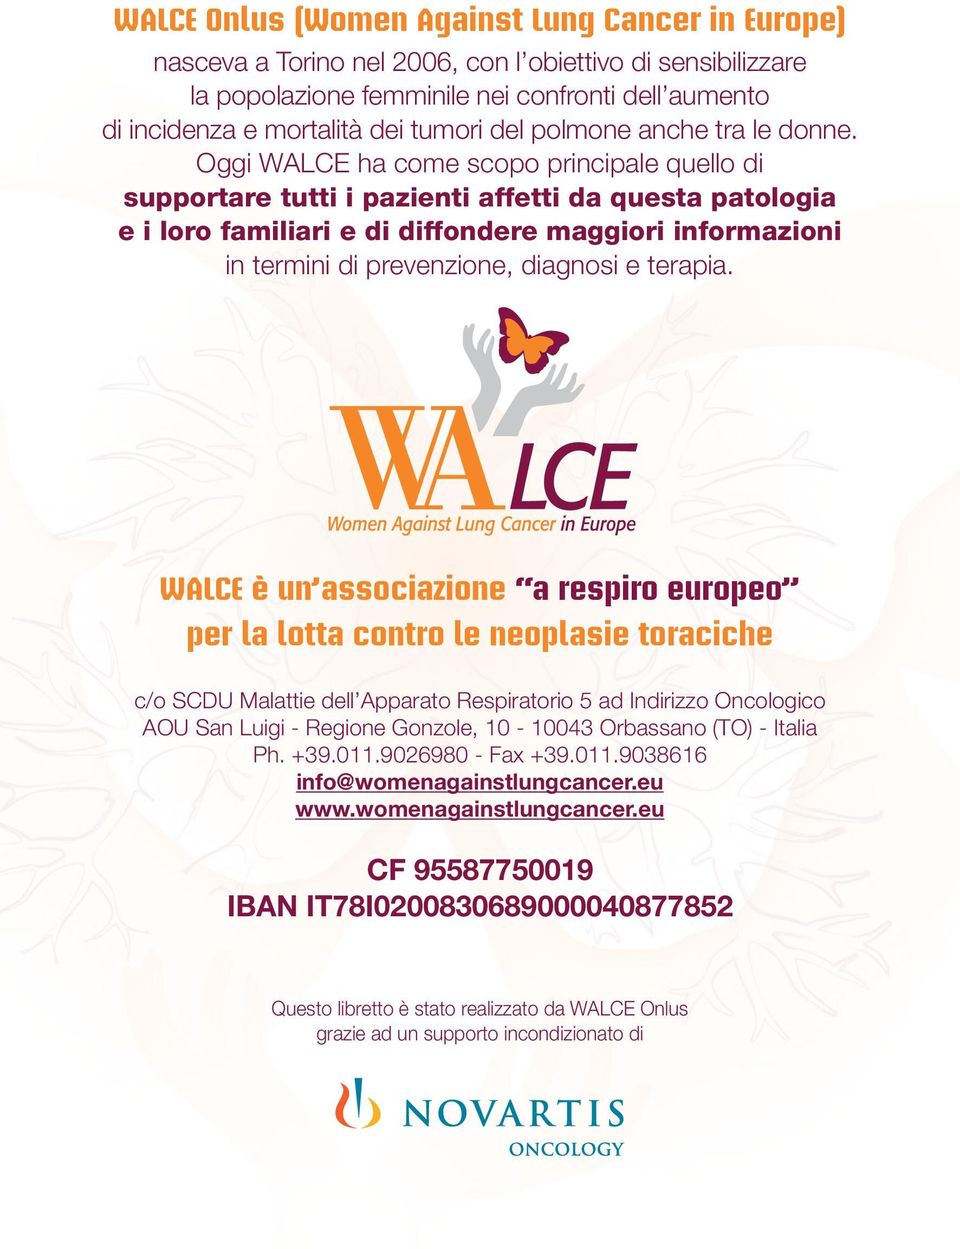 Oggi WALCE ha come scopo principale quello di supportare tutti i pazienti affetti da questa patologia e i loro familiari e di diffondere maggiori informazioni in termini di prevenzione, diagnosi e